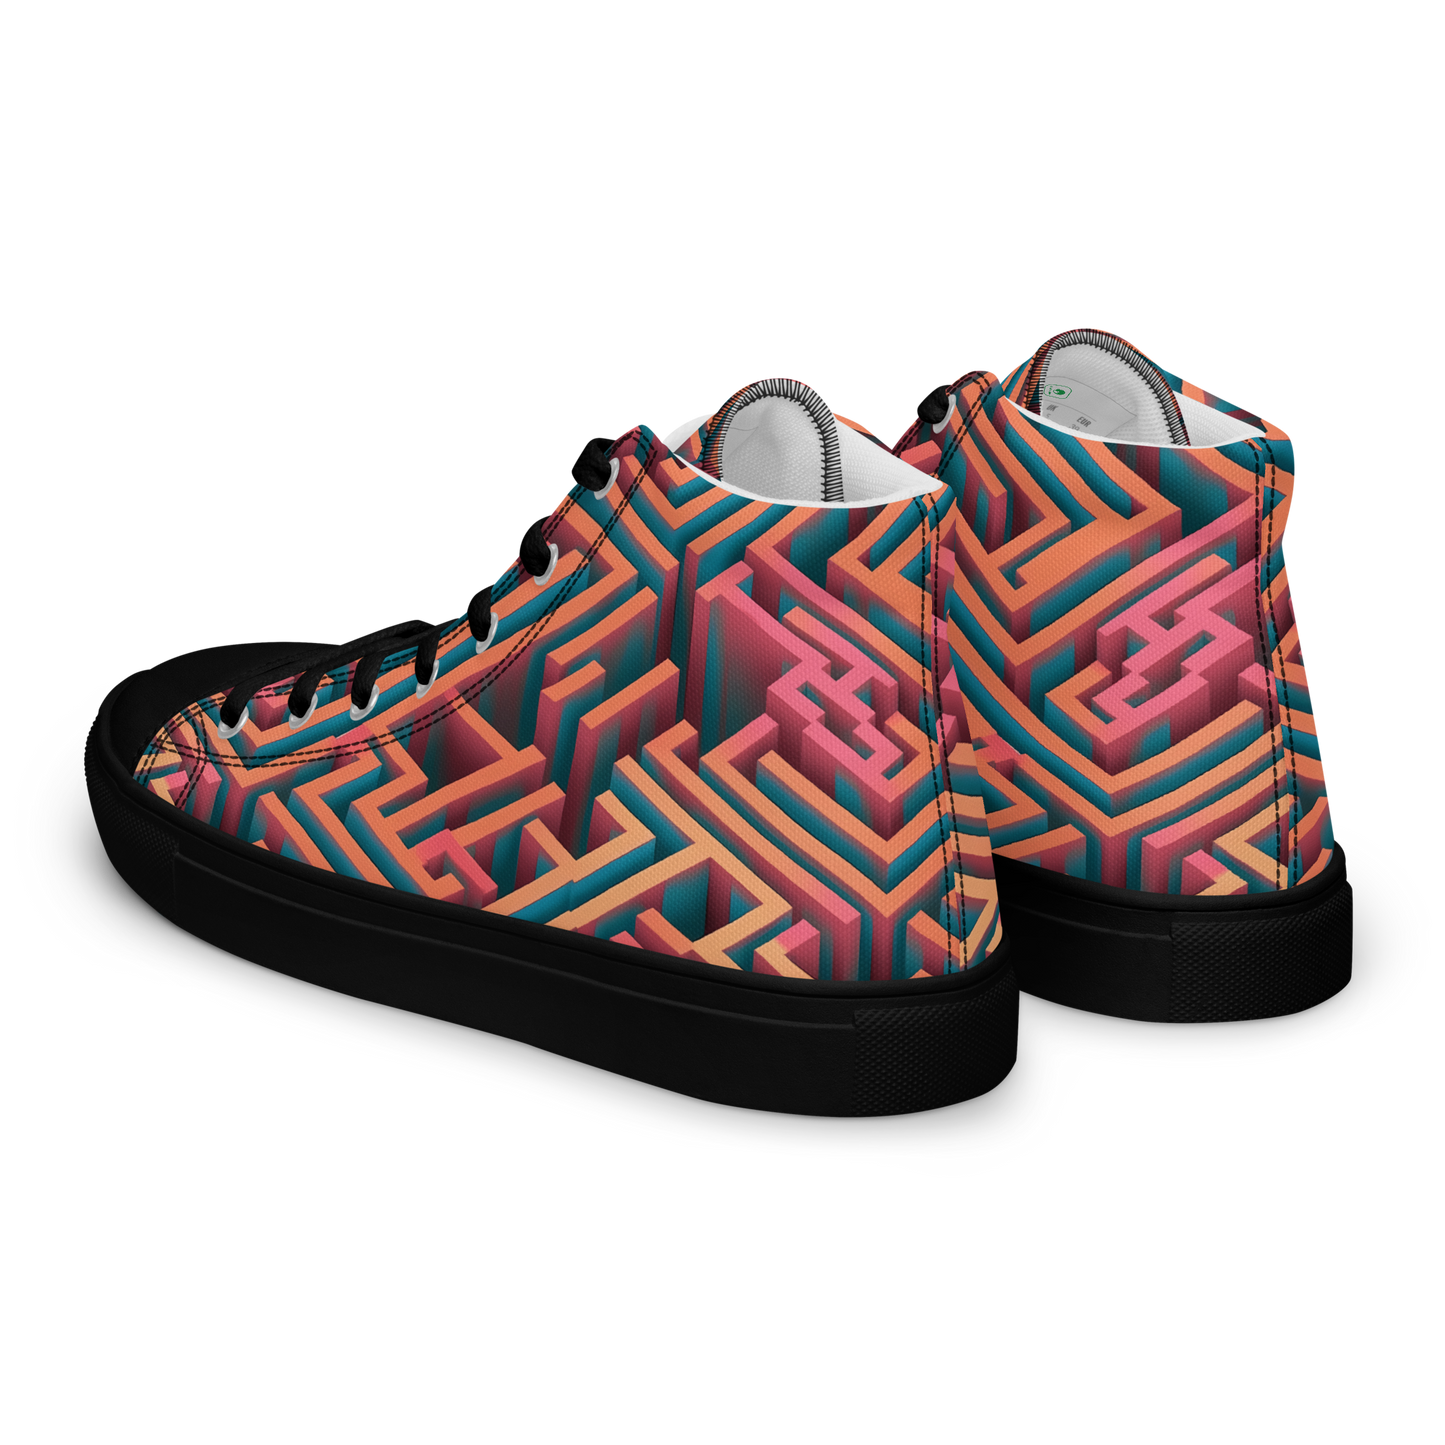 3D Maze Illusion | 3D Patterns | Women's High Top Canvas Shoes - #1